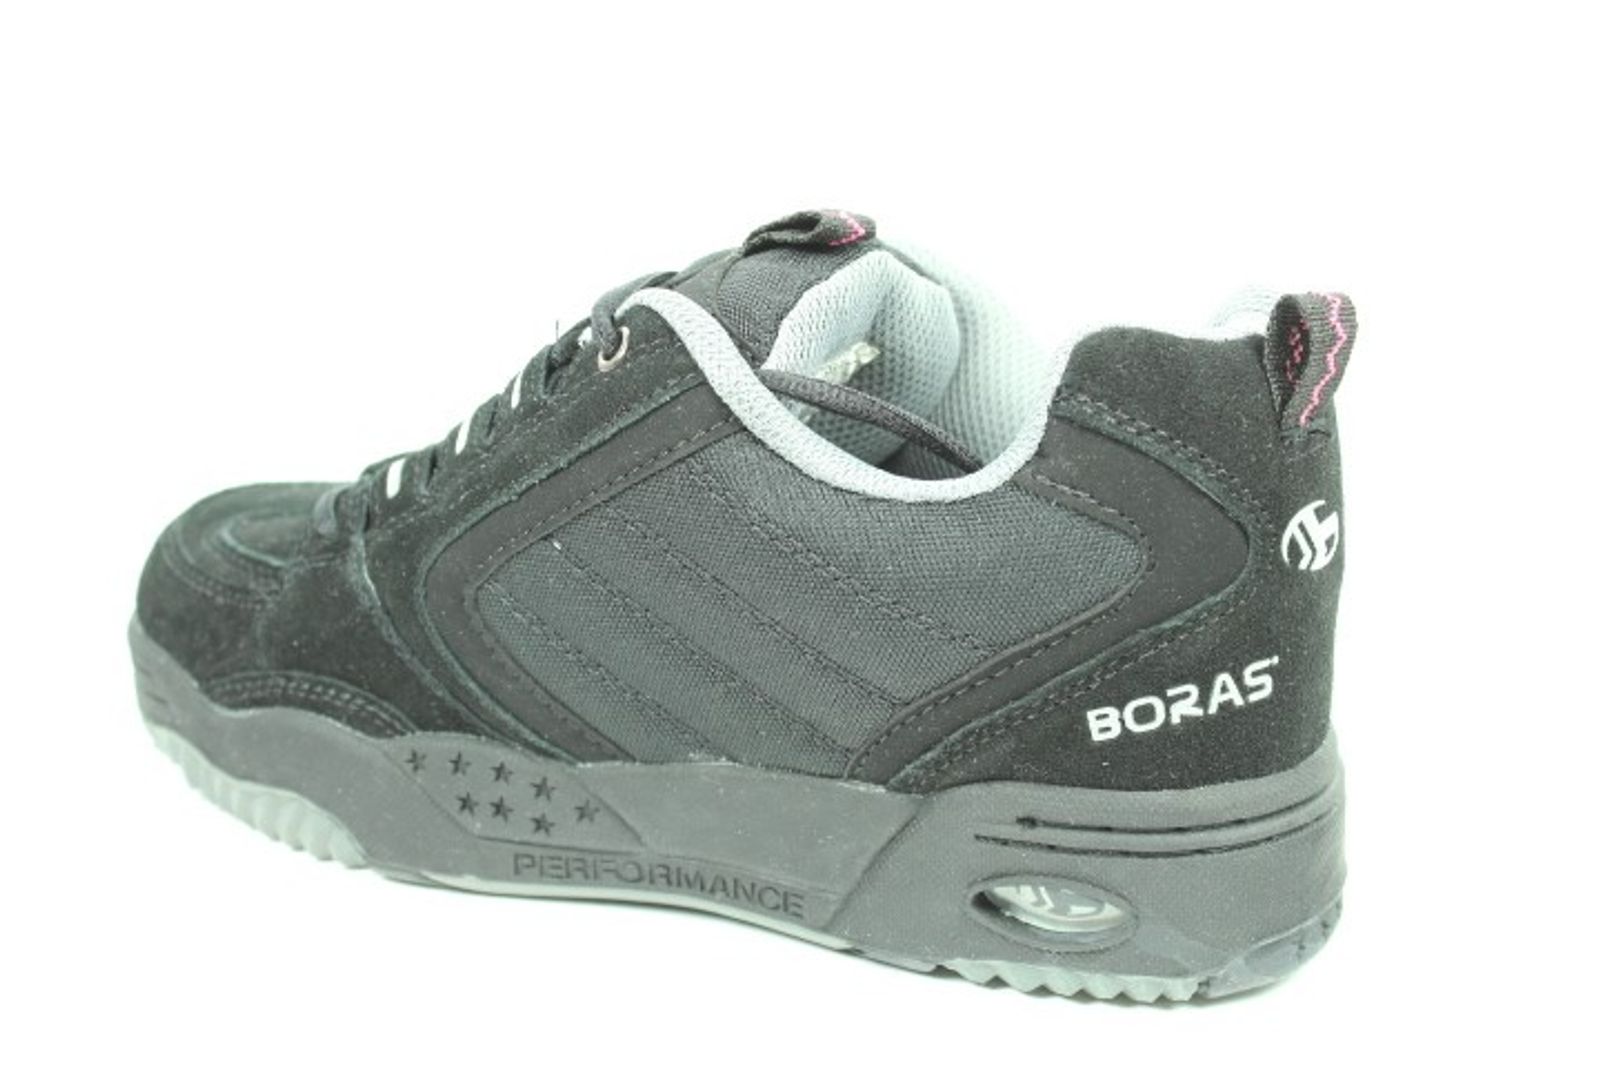 Schuh von BORAS, 39